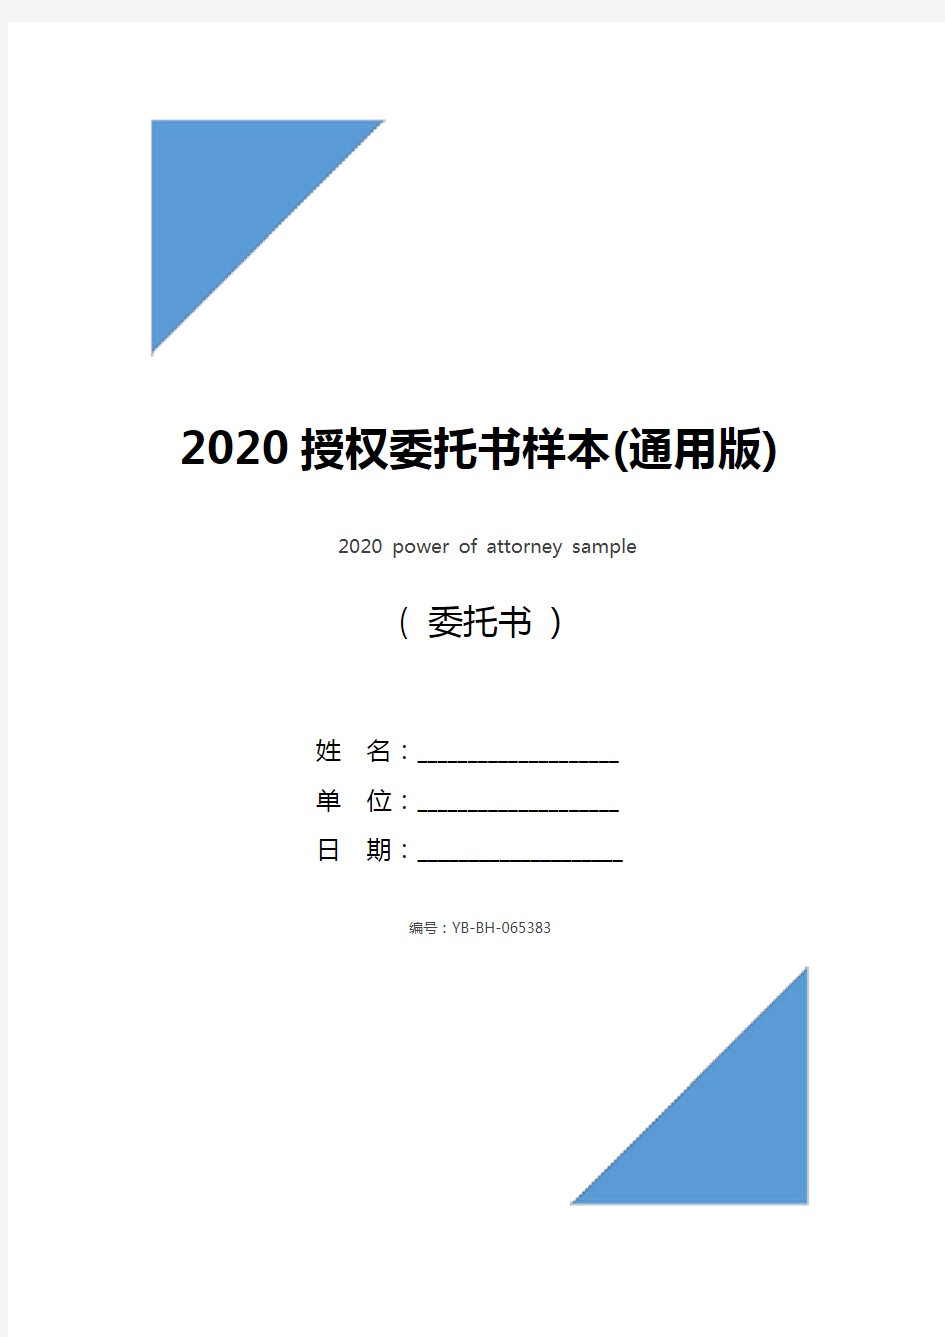 2020授权委托书样本(通用版)